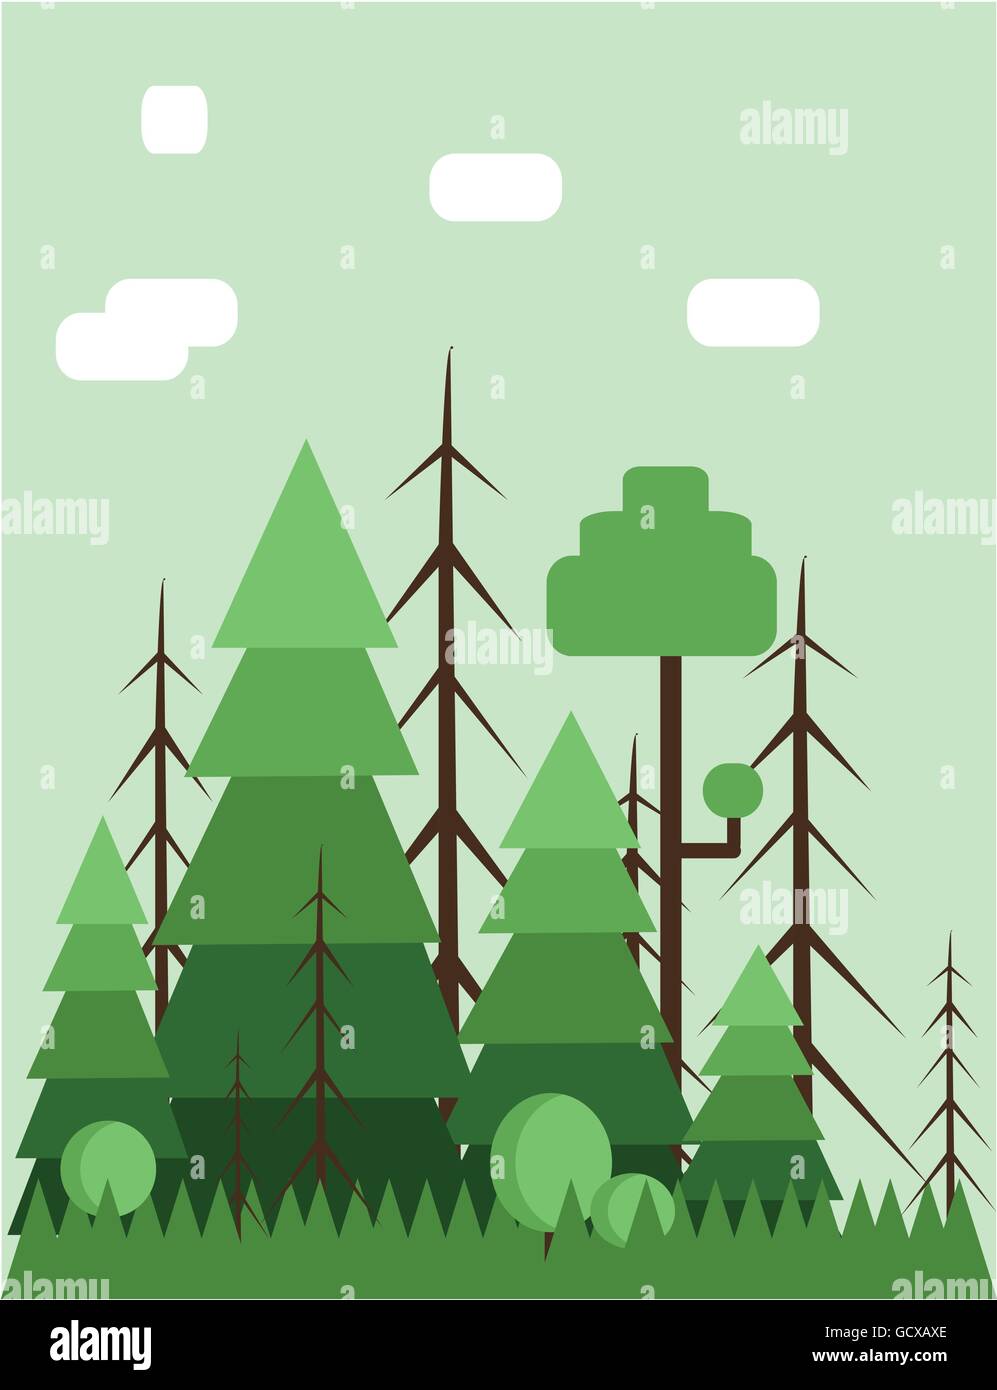 Paesaggio Astratto design con alberi verdi e le nuvole, di tipo piatto. Vettore digitale dell'immagine. Illustrazione Vettoriale